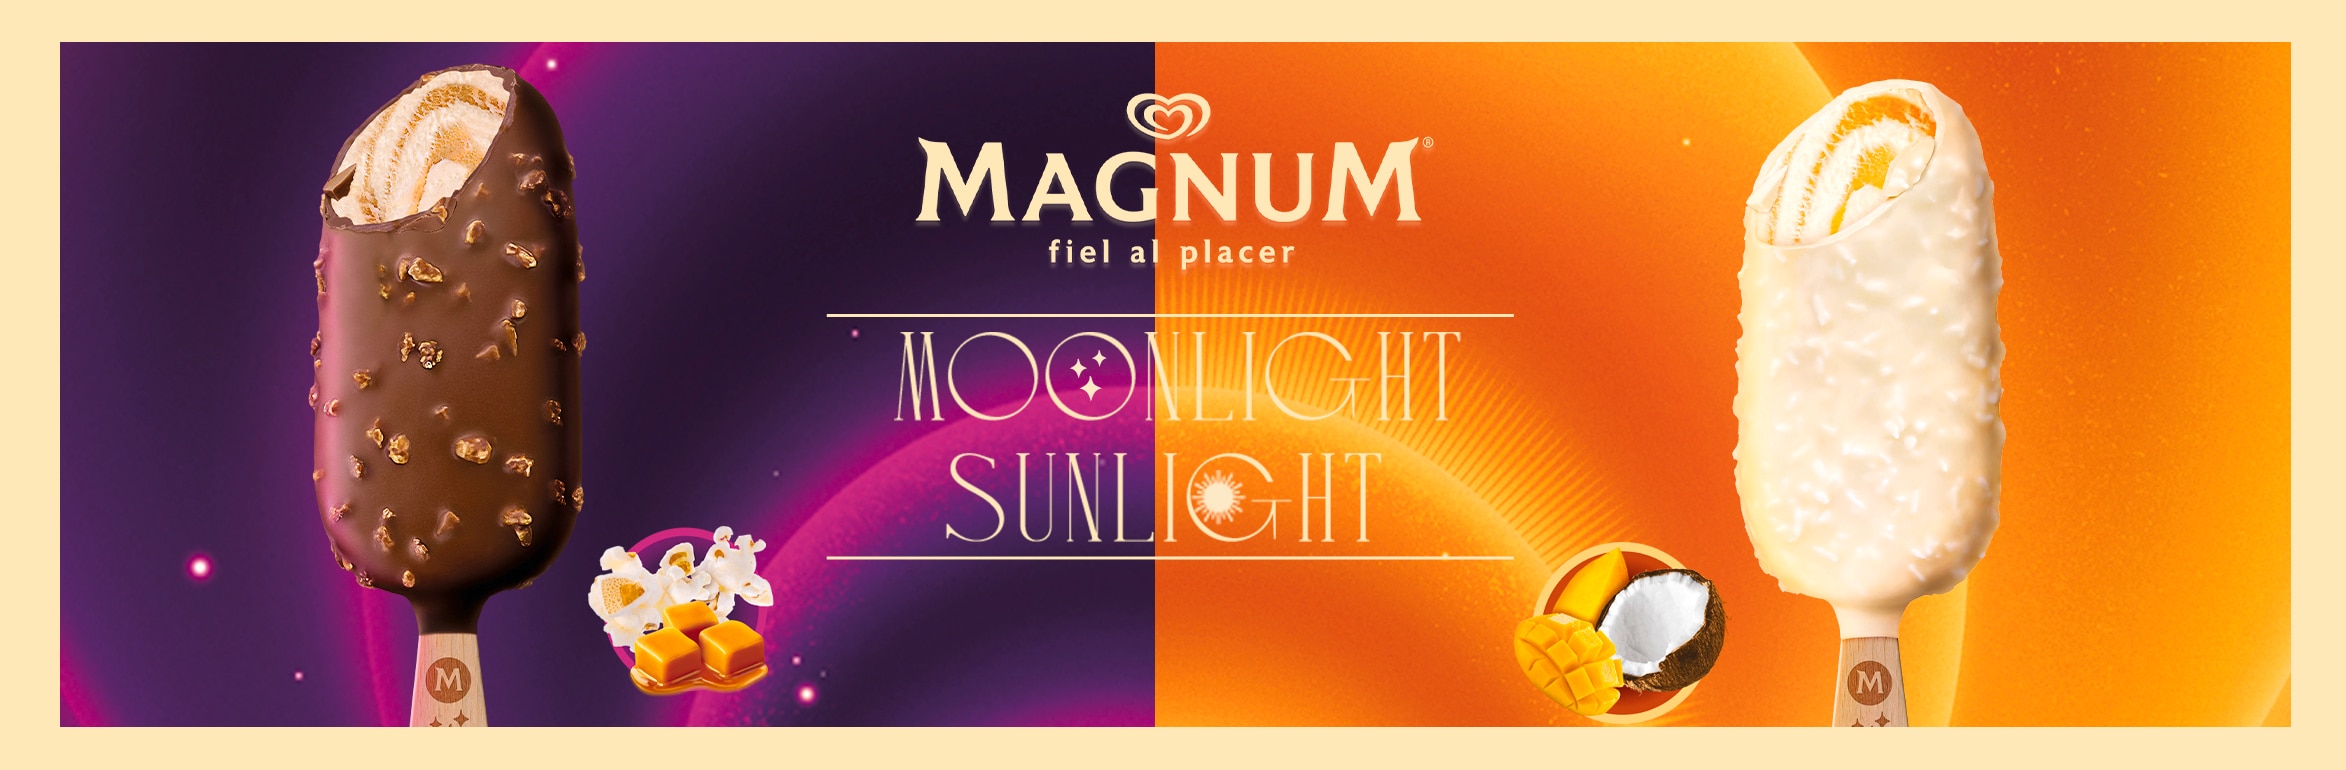 Magnum Sunlight o Moonlight